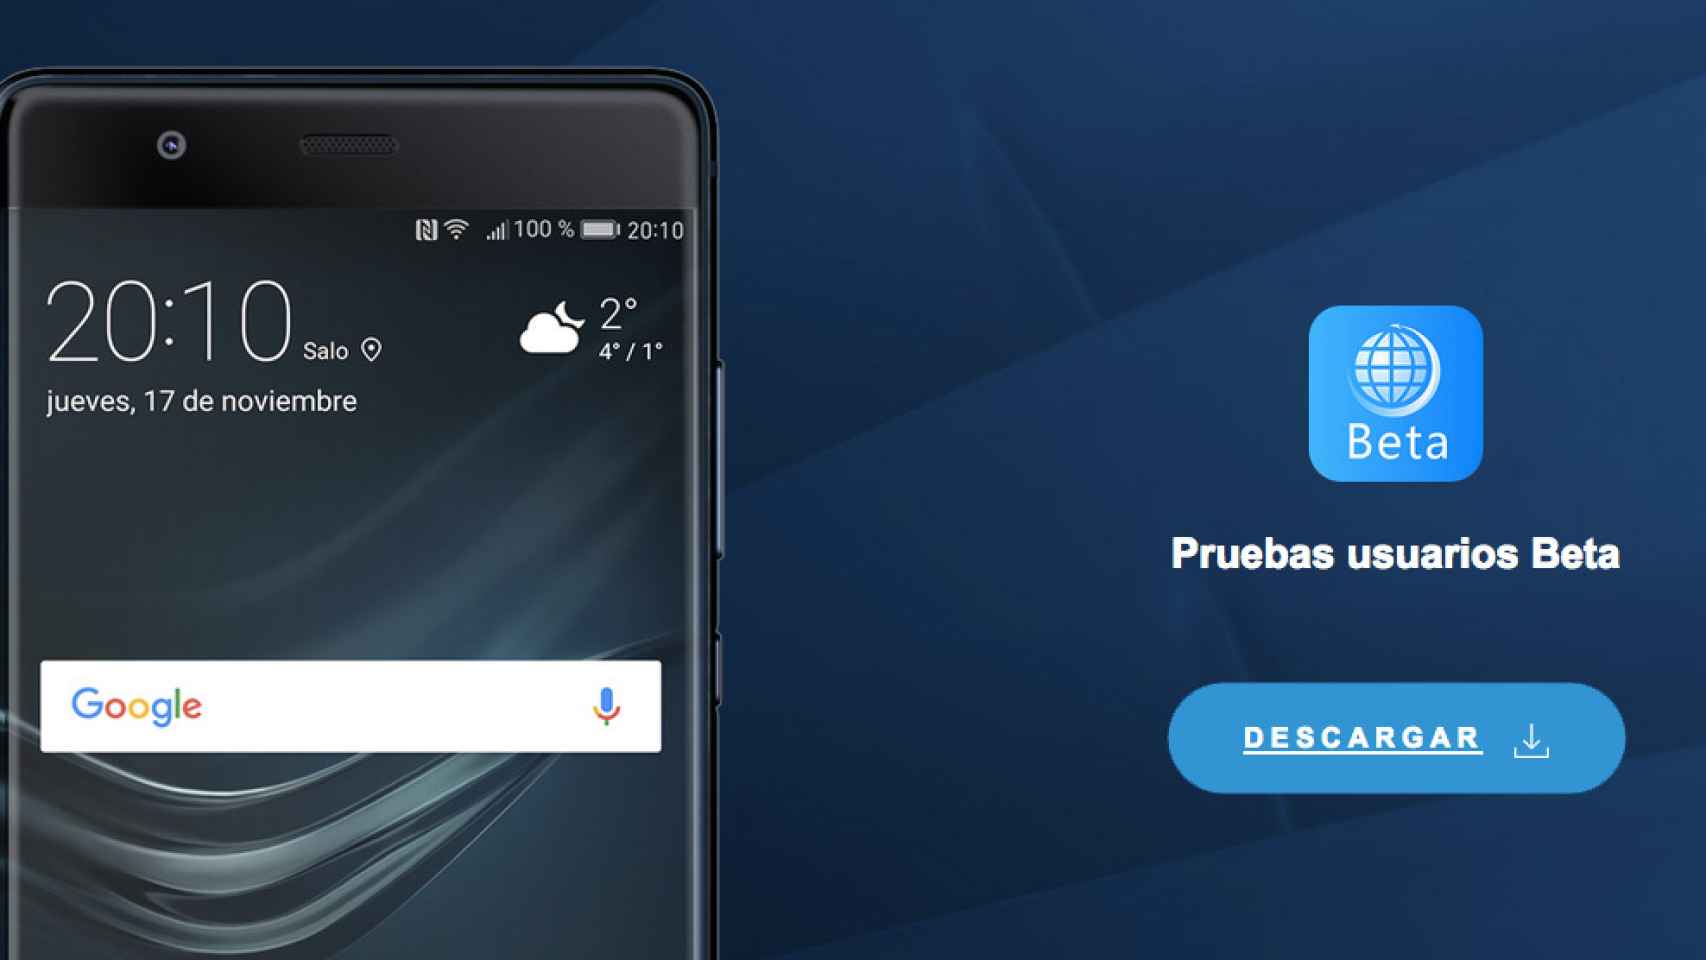 Android 8.0 Oreo llega al Huawei Mate 9 en su versión beta